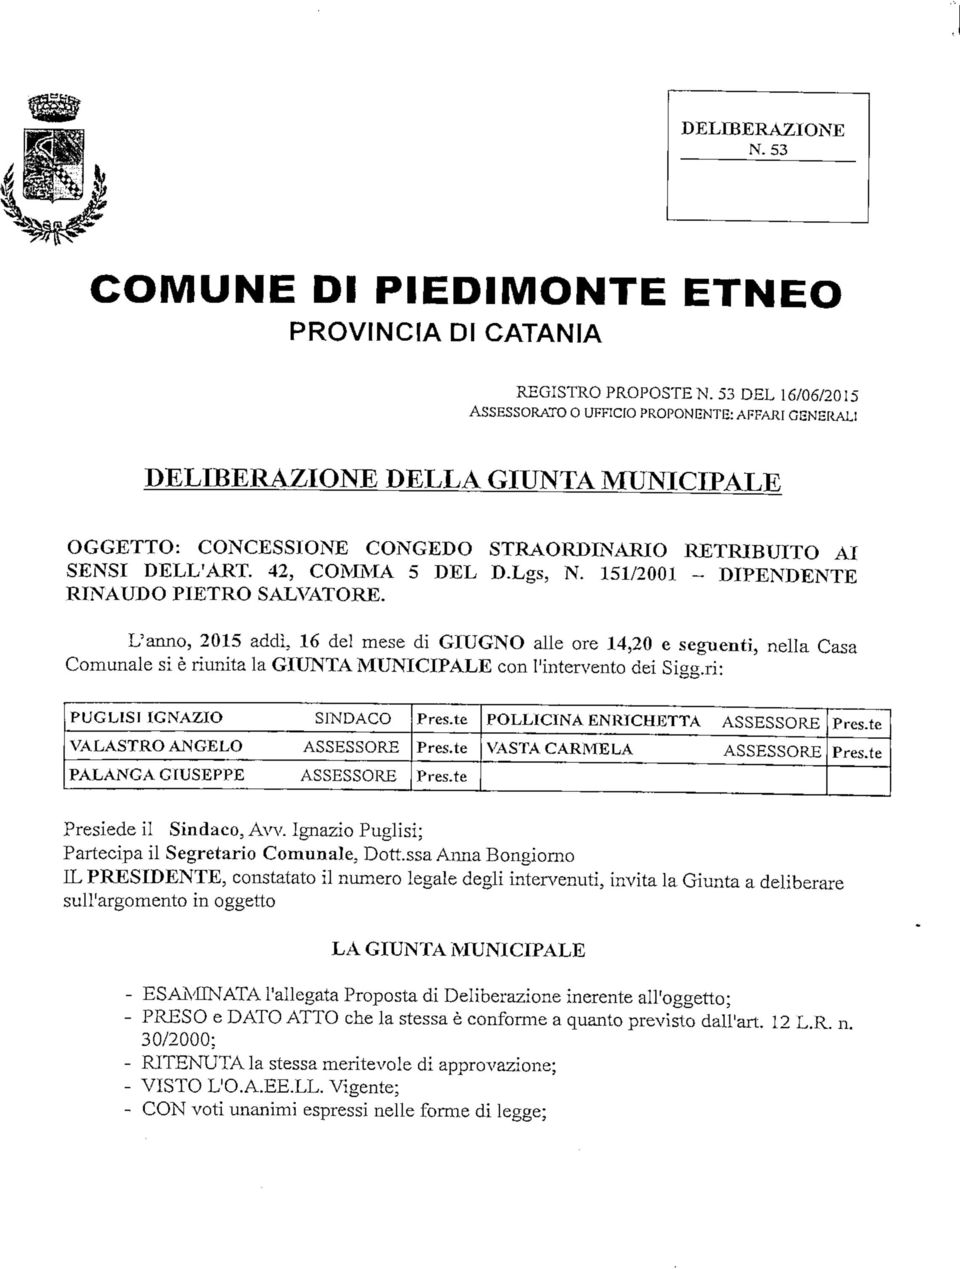 Lgs, N. 151/2001 - DIPENDENTE RINAUDO PIETRO SALVATORE.